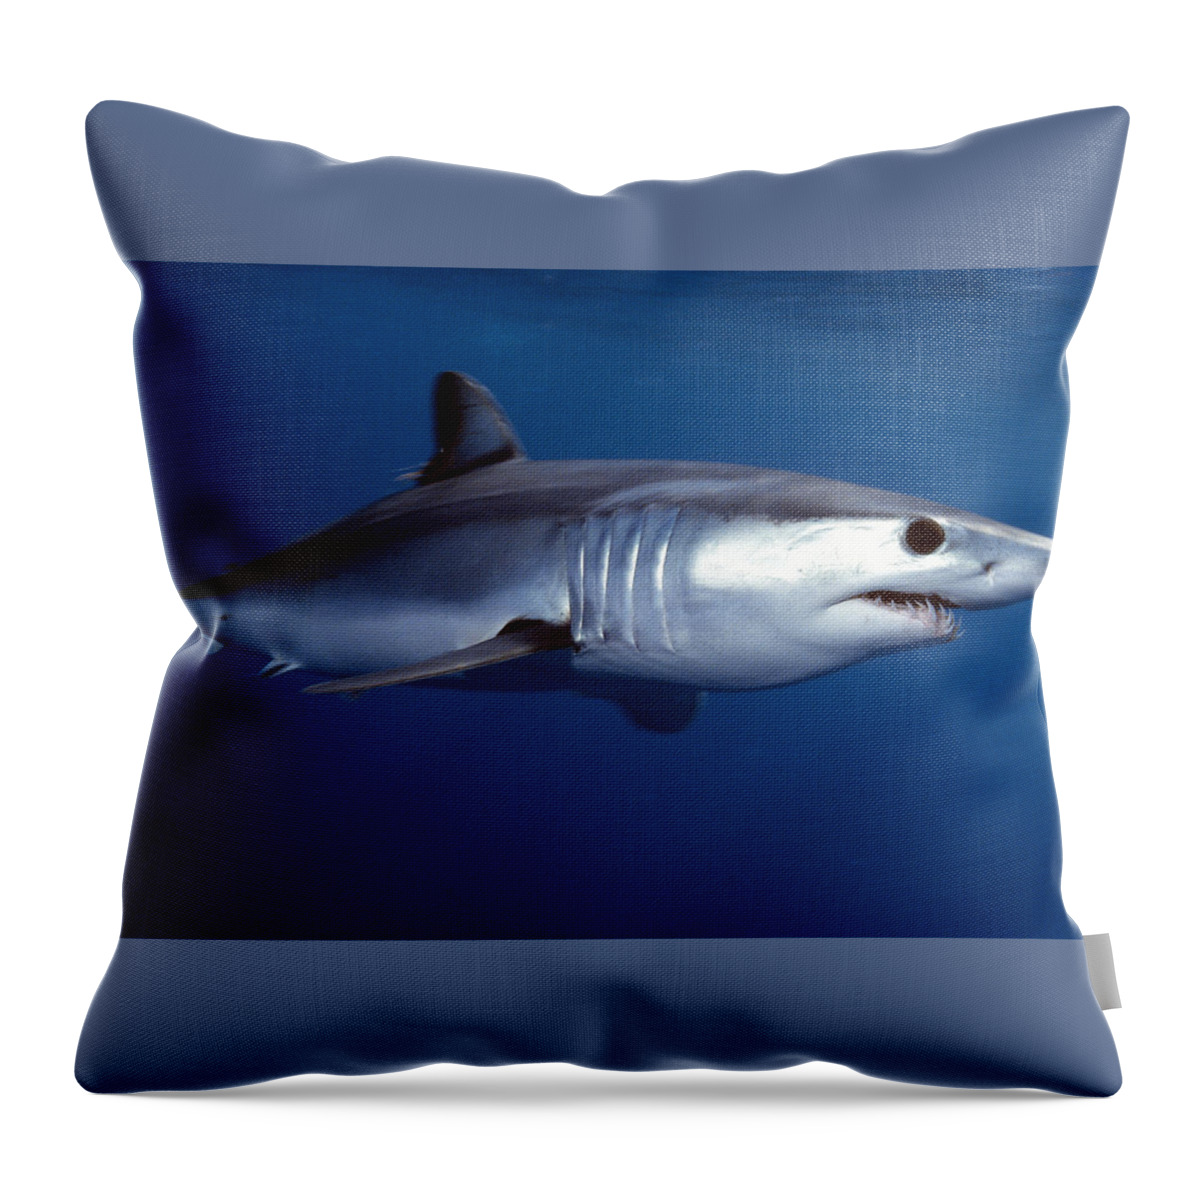 Mako Shark Throw Pillow featuring the digital art Mako Shark by Super Lovely